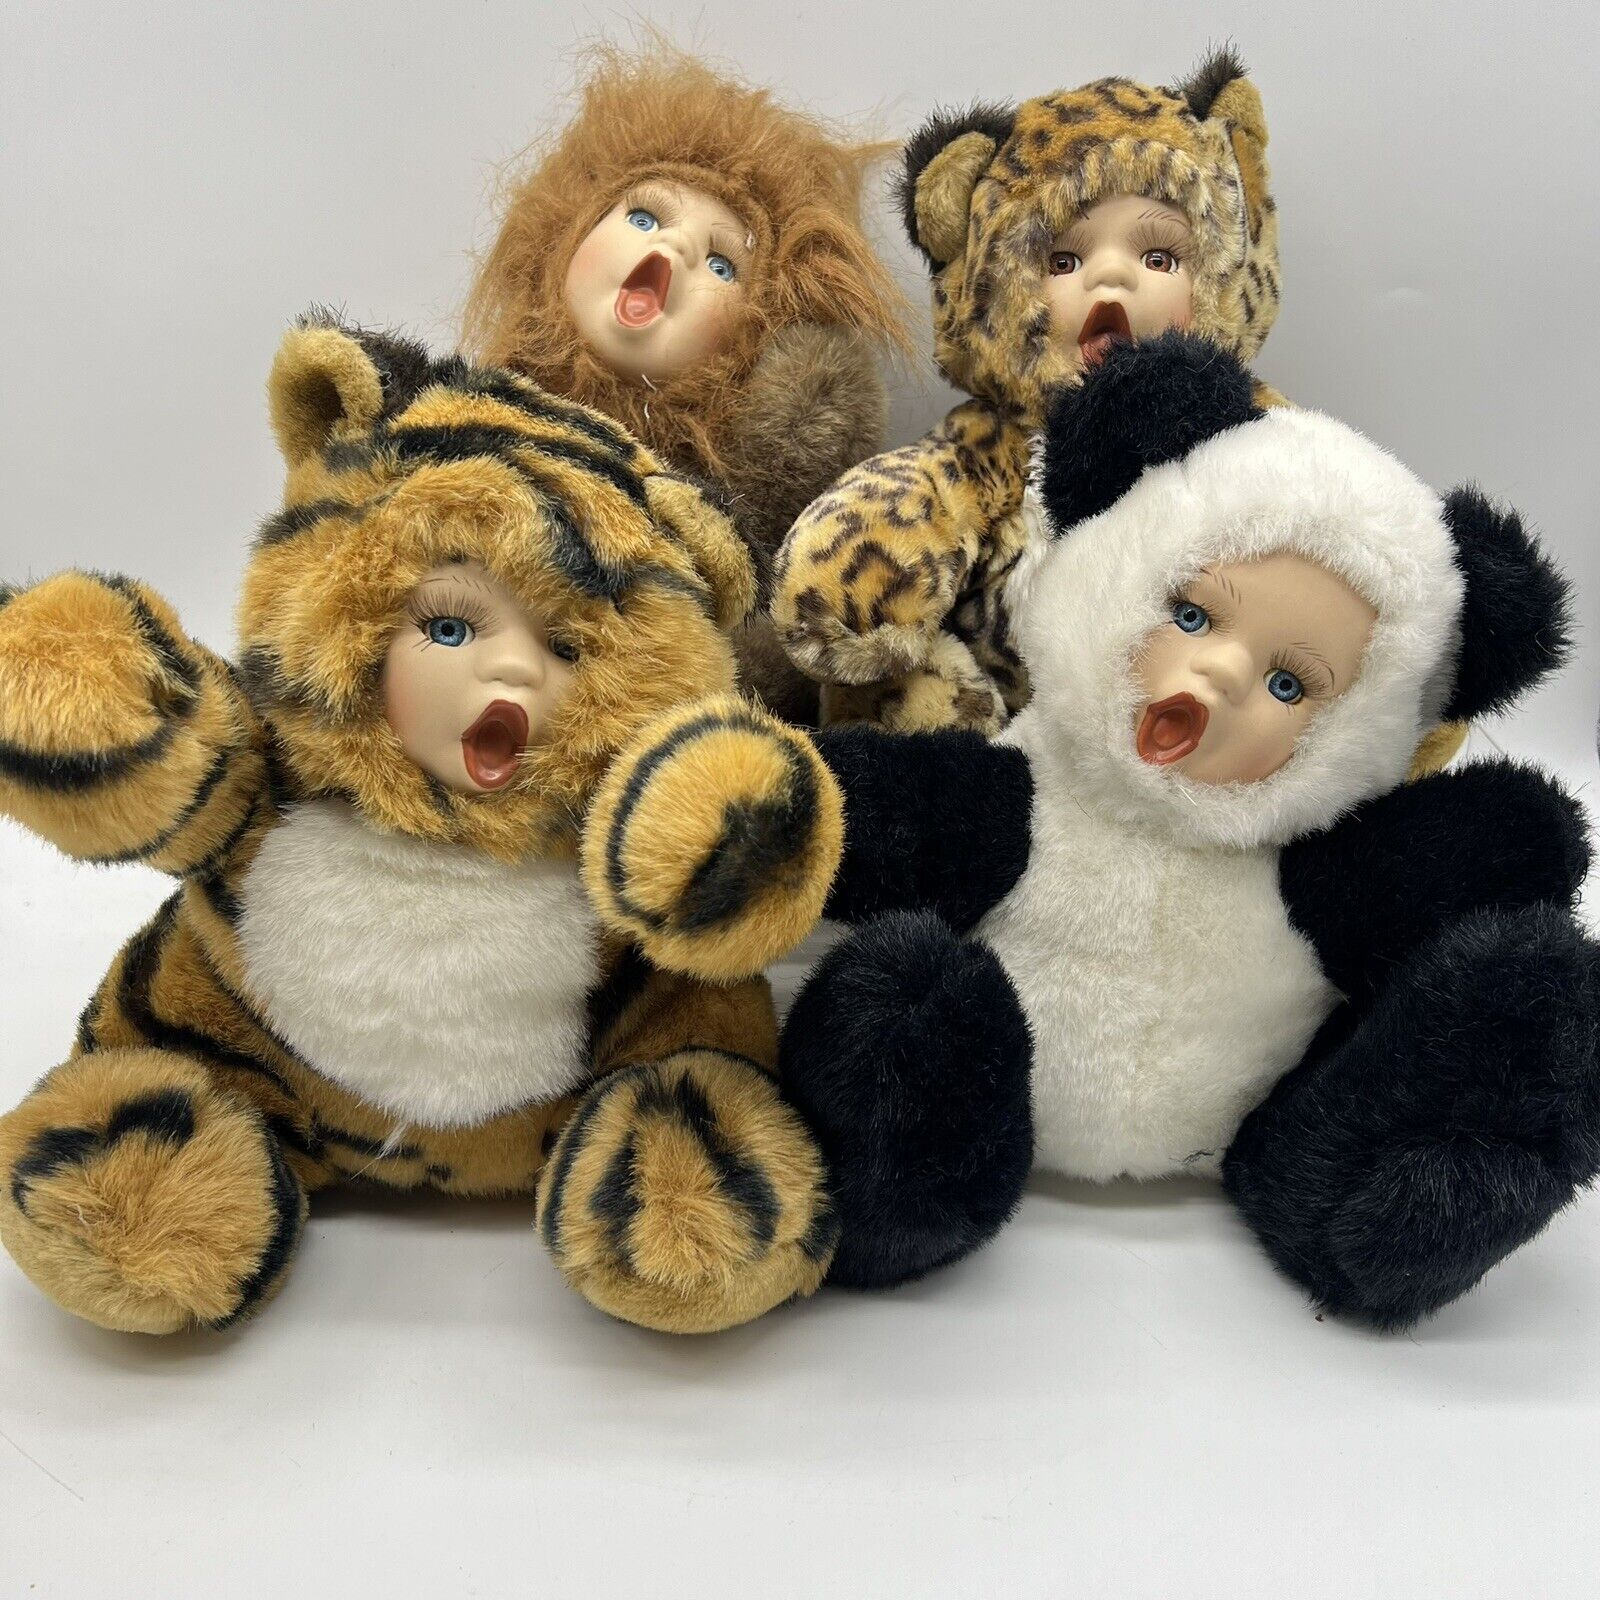 Oriental Trading Porcelain Face Human Baby Animal Panda Tiger Cheetah Lion Plush